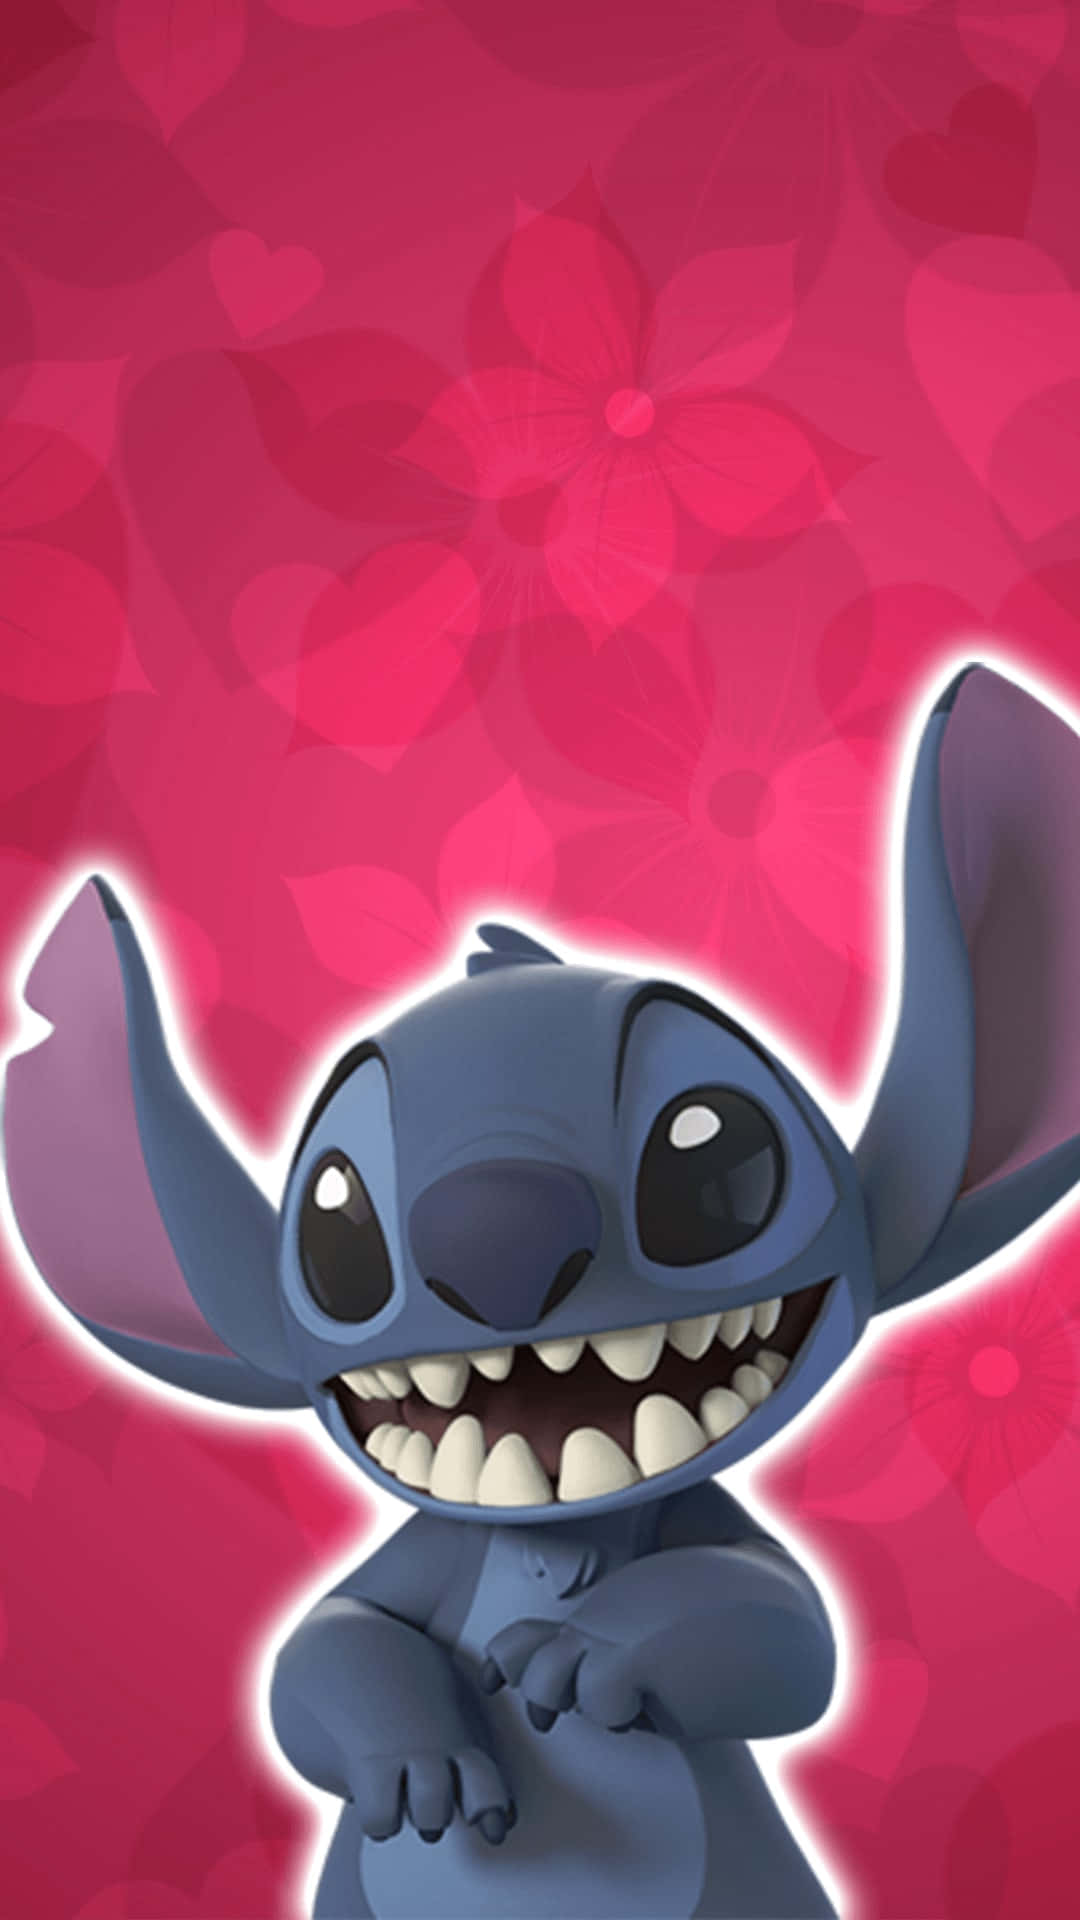 Vis din særlige nogen kærlighed på Valentins Dag med Disney! Wallpaper